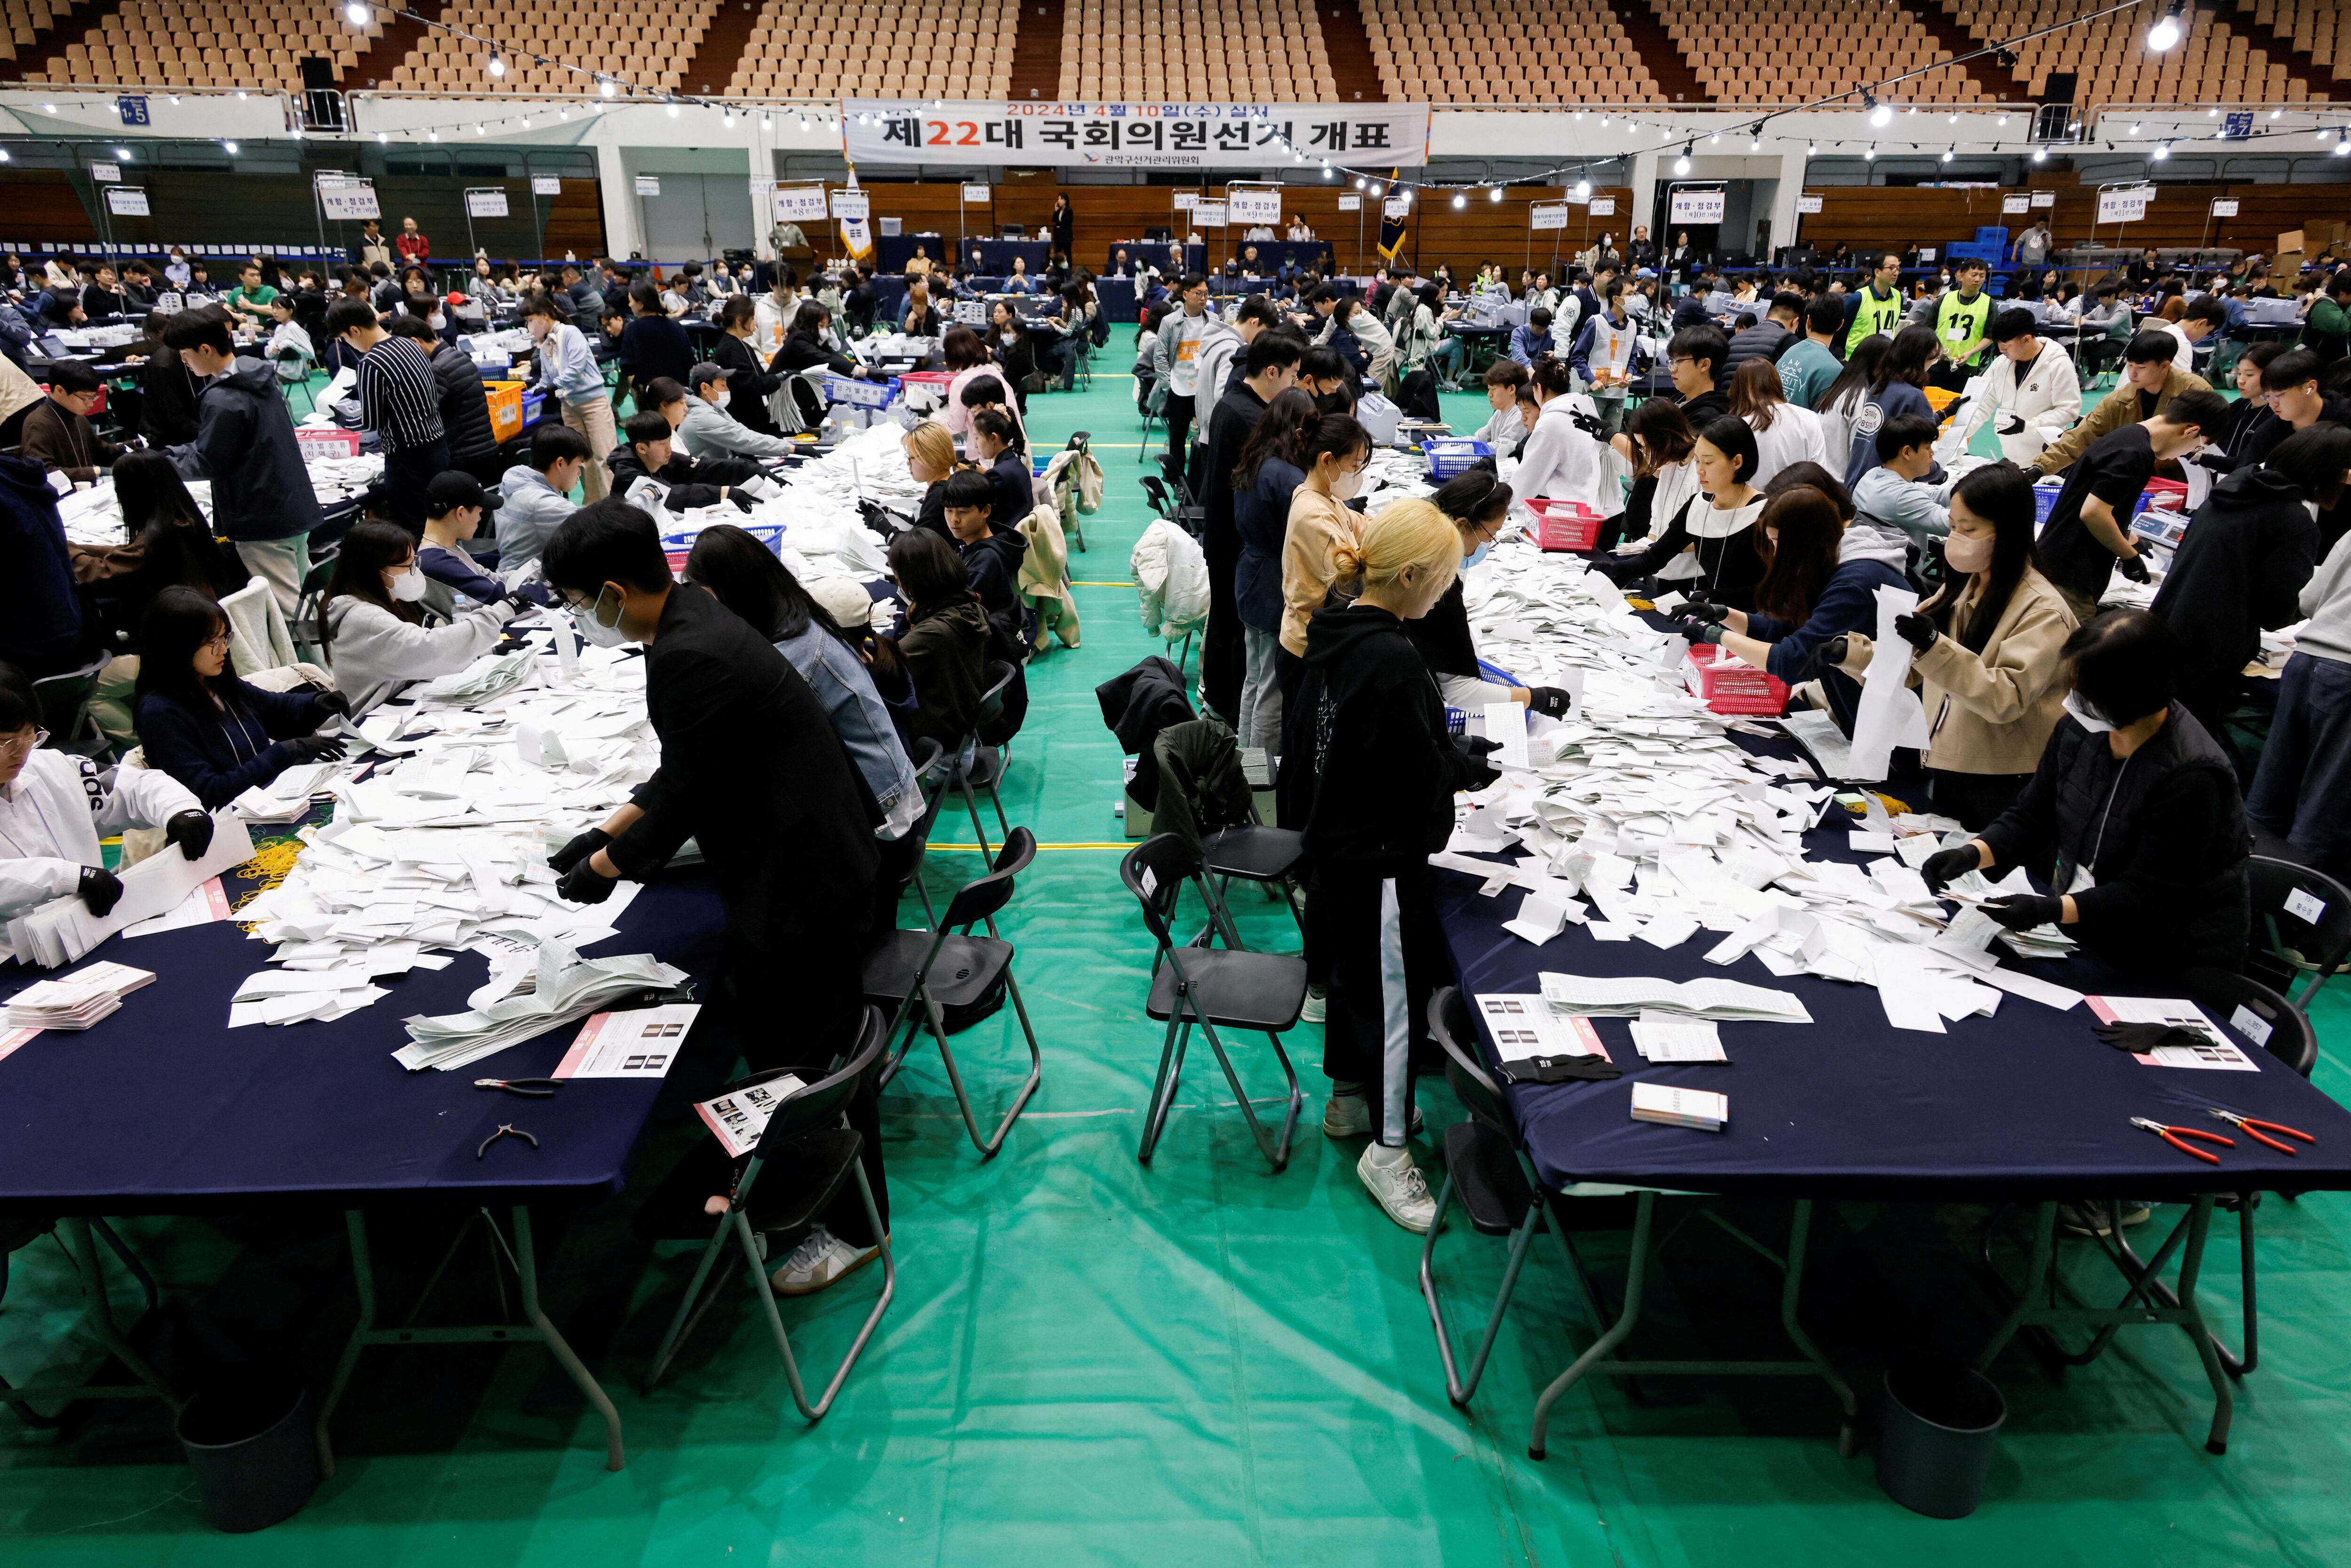 Funcionarios de la Comisión Electoral Nacional cuentan papeletas durante las 22ª elecciones parlamentarias en Seúl, Corea del Sur, este 10 de abril de 2024 (REUTERS)